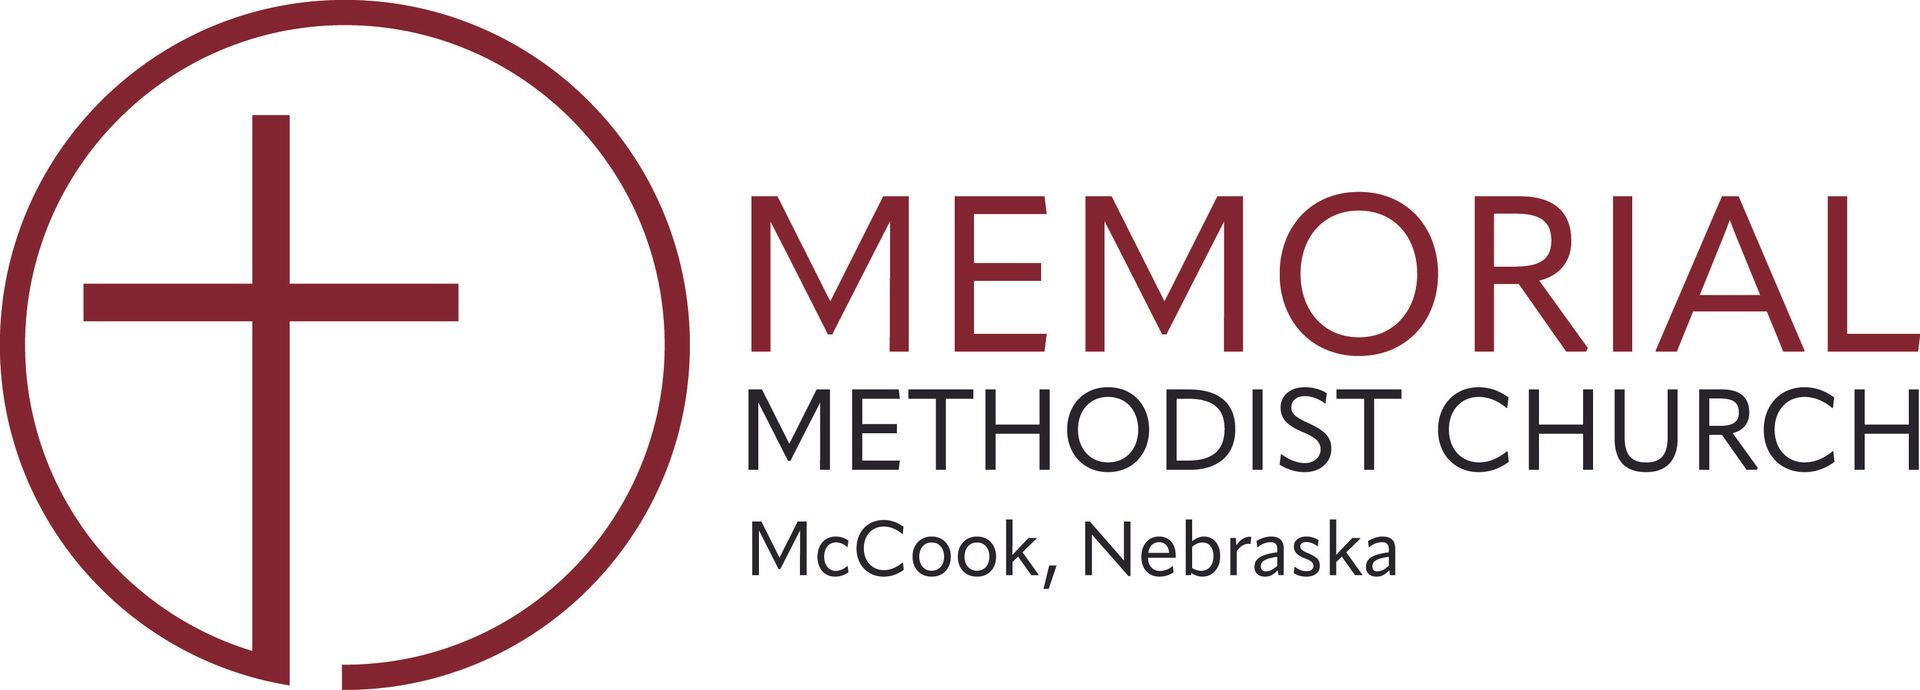 The logo for the Memorial Methodist Church in McCook, Nebraska.